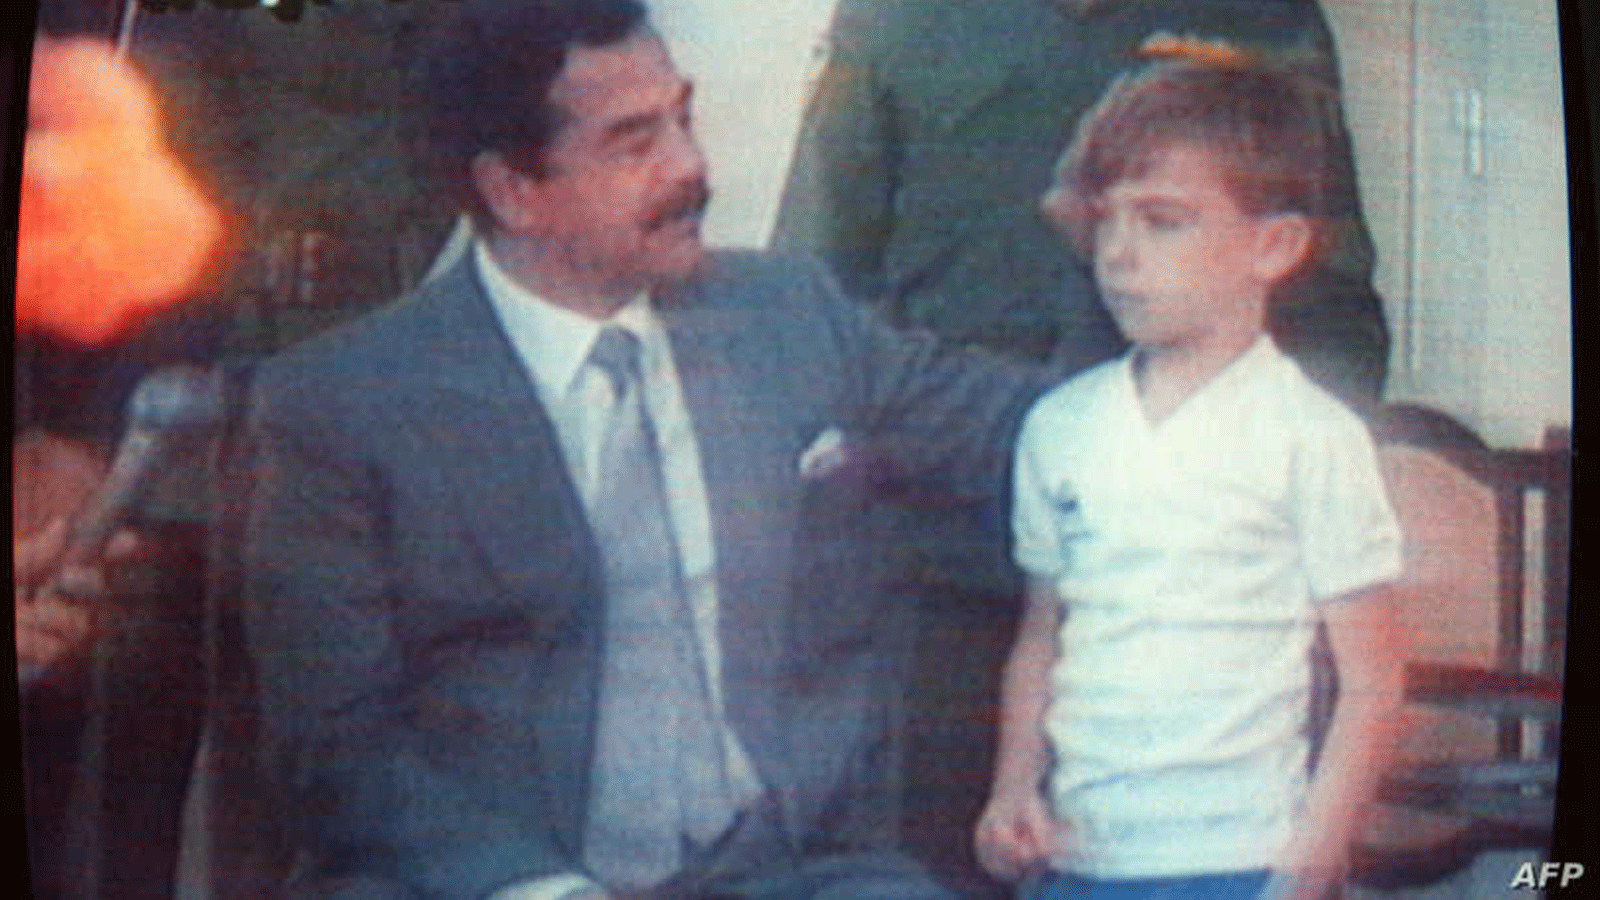 ستيوارت لوكوود البالغ من العمر خمسة أعوام آنذاك، تم تصويره مع صدام حسين الذي حاول أن يُظهر للعالم أن الرهائن يعاملون معاملة حسنة